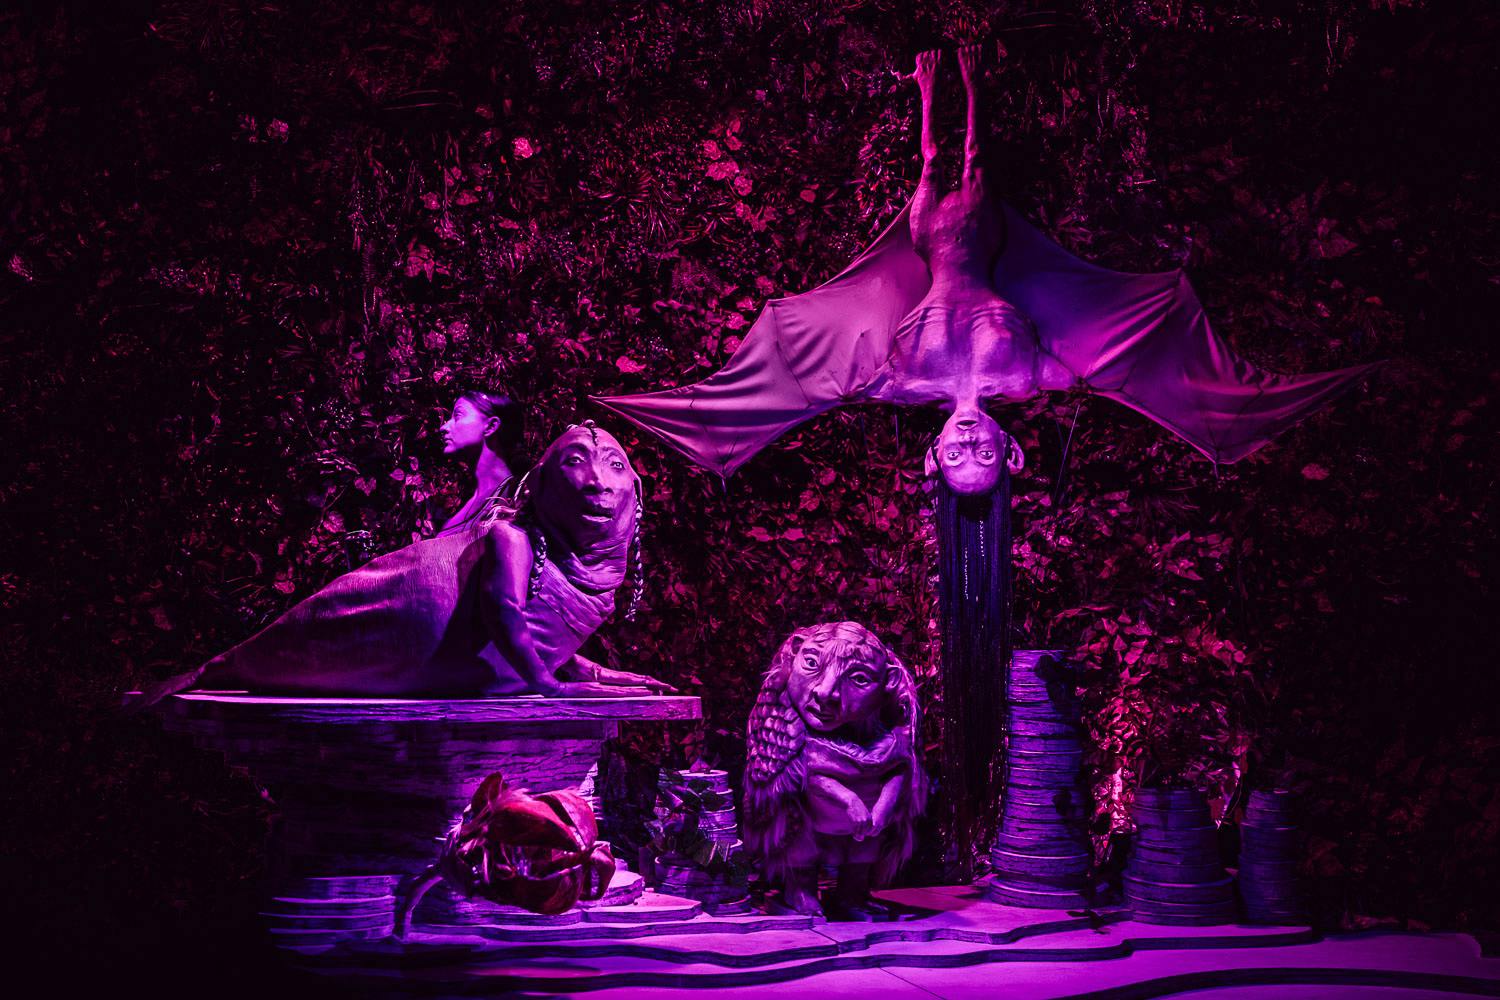 Una scenografia surreale. Delle strane sculture di figure in parte zoomorfe in parte umane davanti a uno sfondo di fogliame. Tutto è illuminato da una tenue luce violetta.